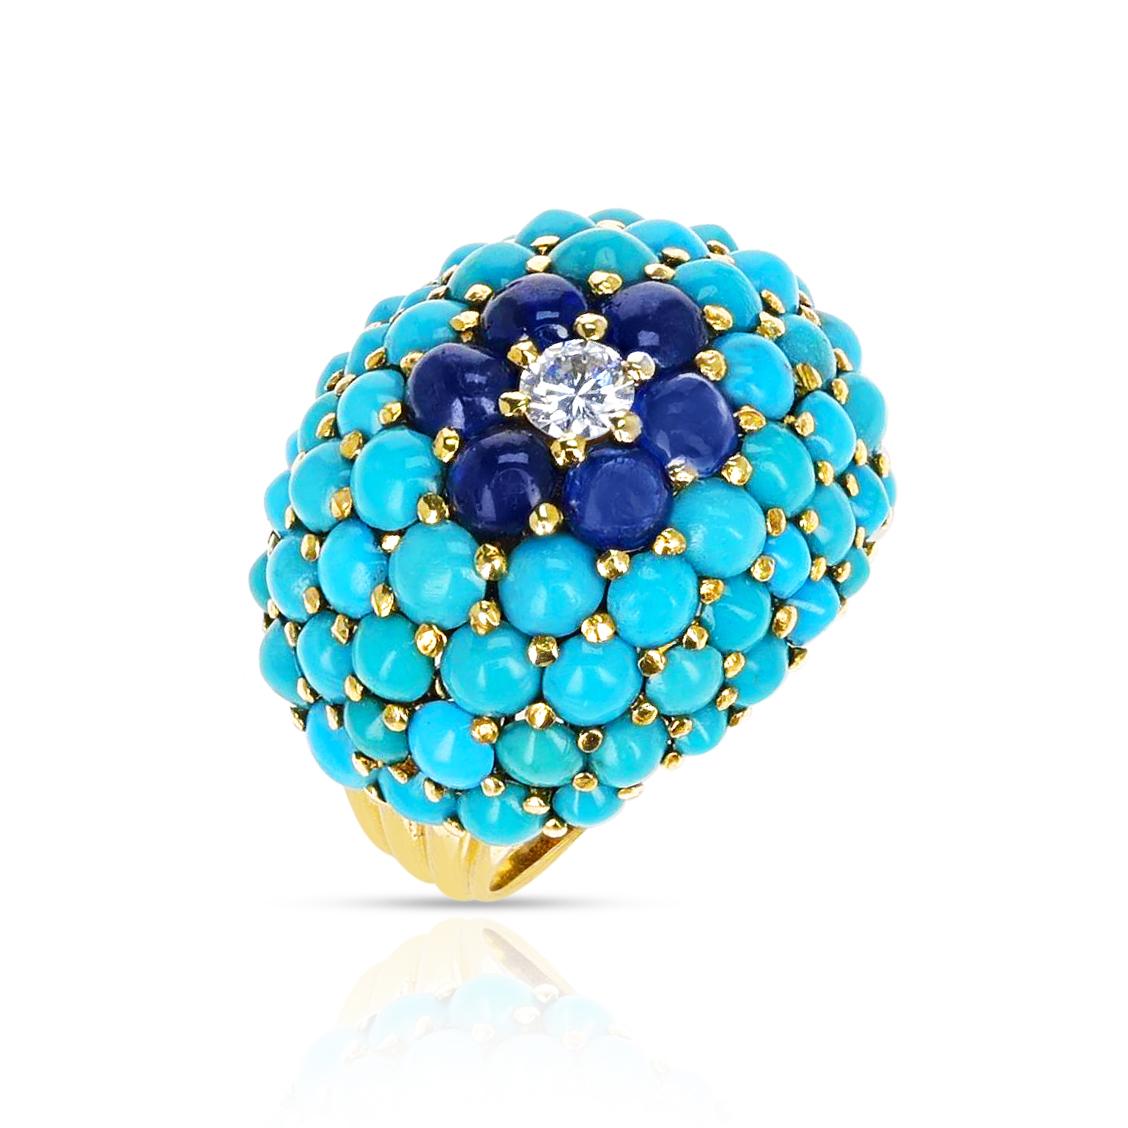 Ein Retro-Stil Türkis und Saphir Cabochon Ring mit Diamanten. Die Saphire wiegen ca. 1,80 ct. und die Diamanten wiegen 0,20 ct. Der Ring ist aus 18k Gelbgold gefertigt. Passende Ohrringe erhältlich.

SKU: 1041-RAGTJAY